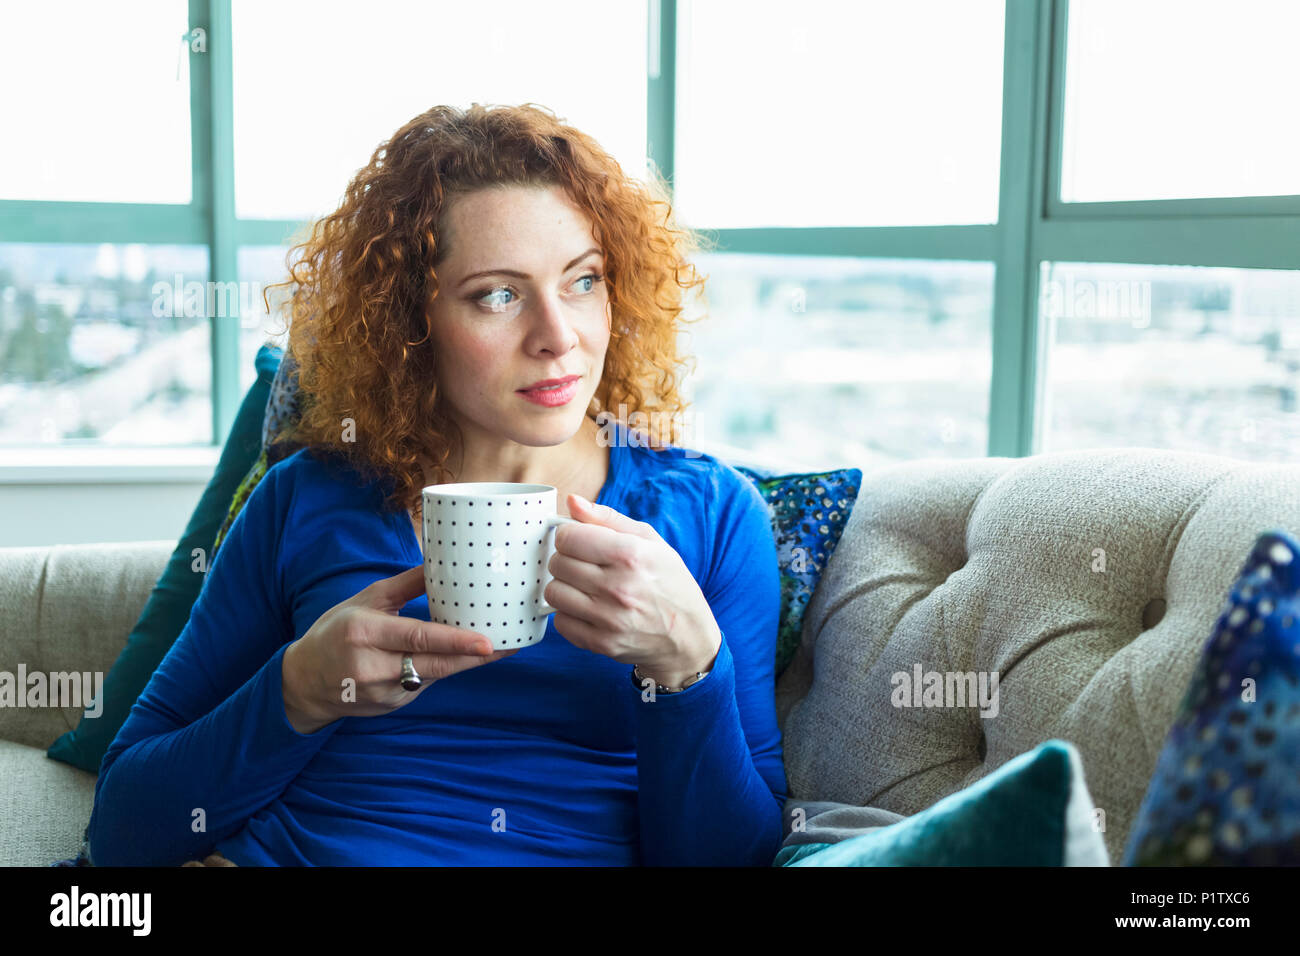 Donna con rosso, capelli ricci seduta con una tazza da una finestra; Surrey, British Columbia, Canada Foto Stock